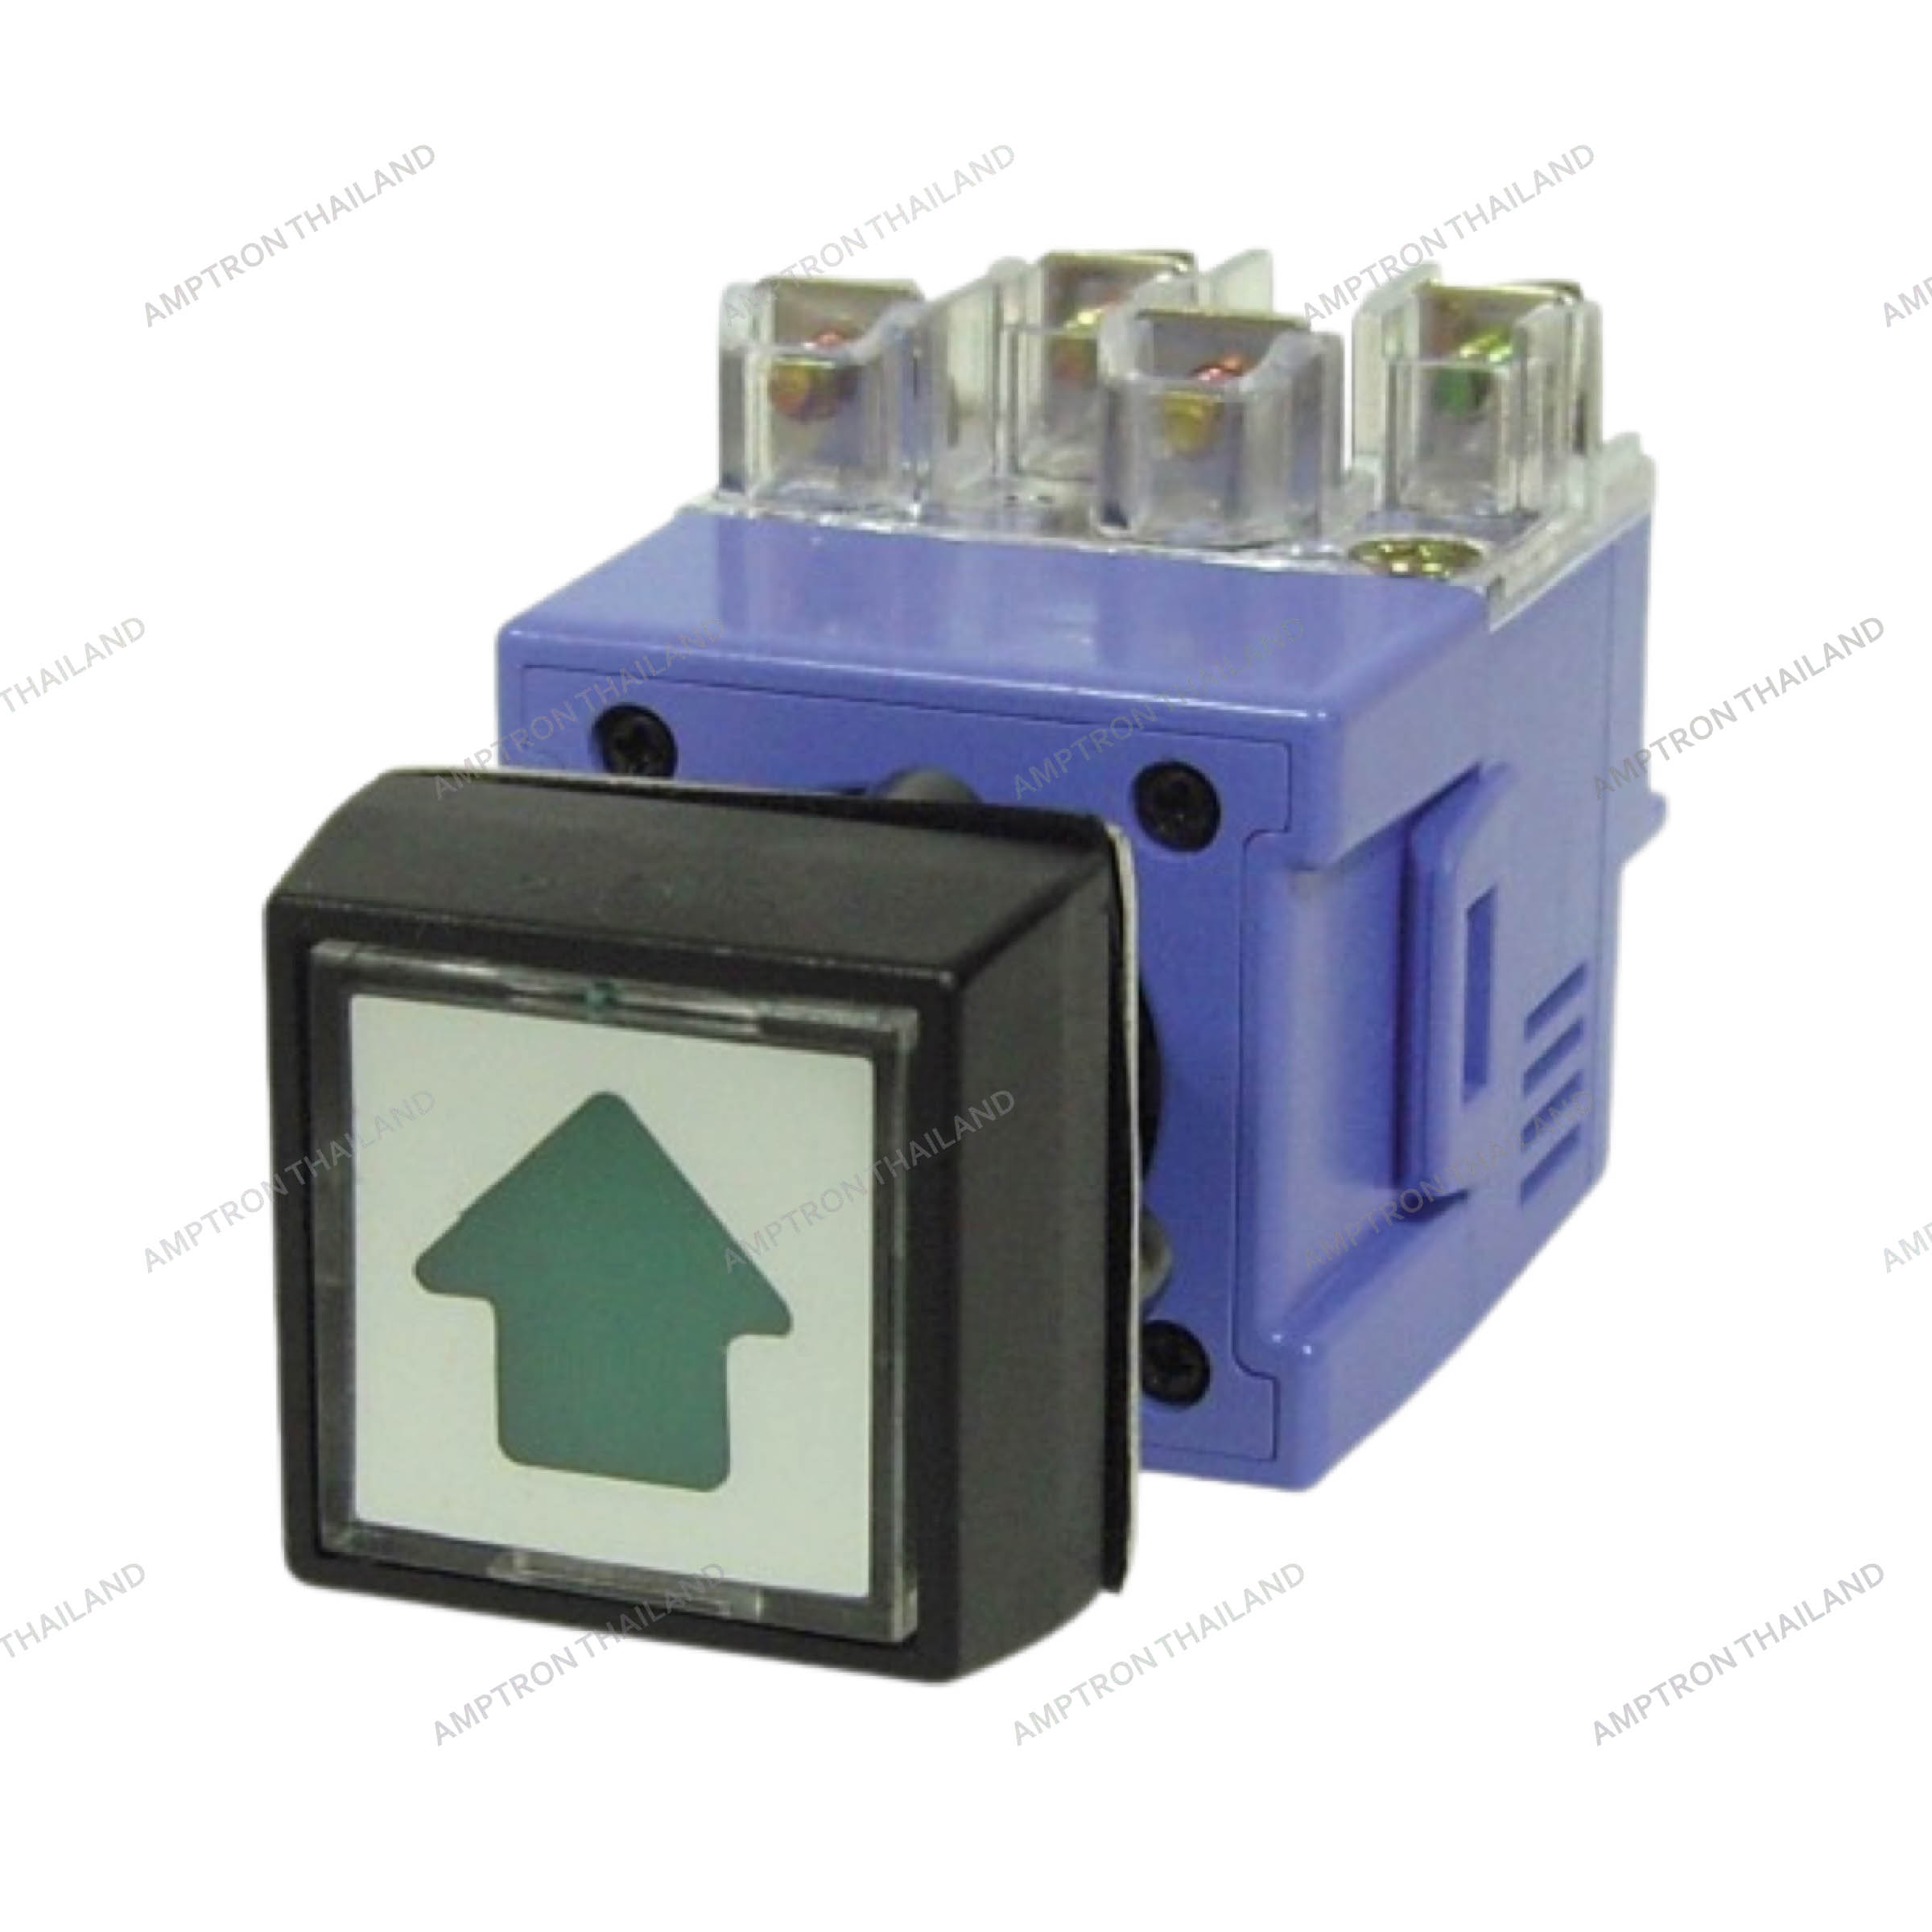 Illuminated Push Button Switch (A Type)